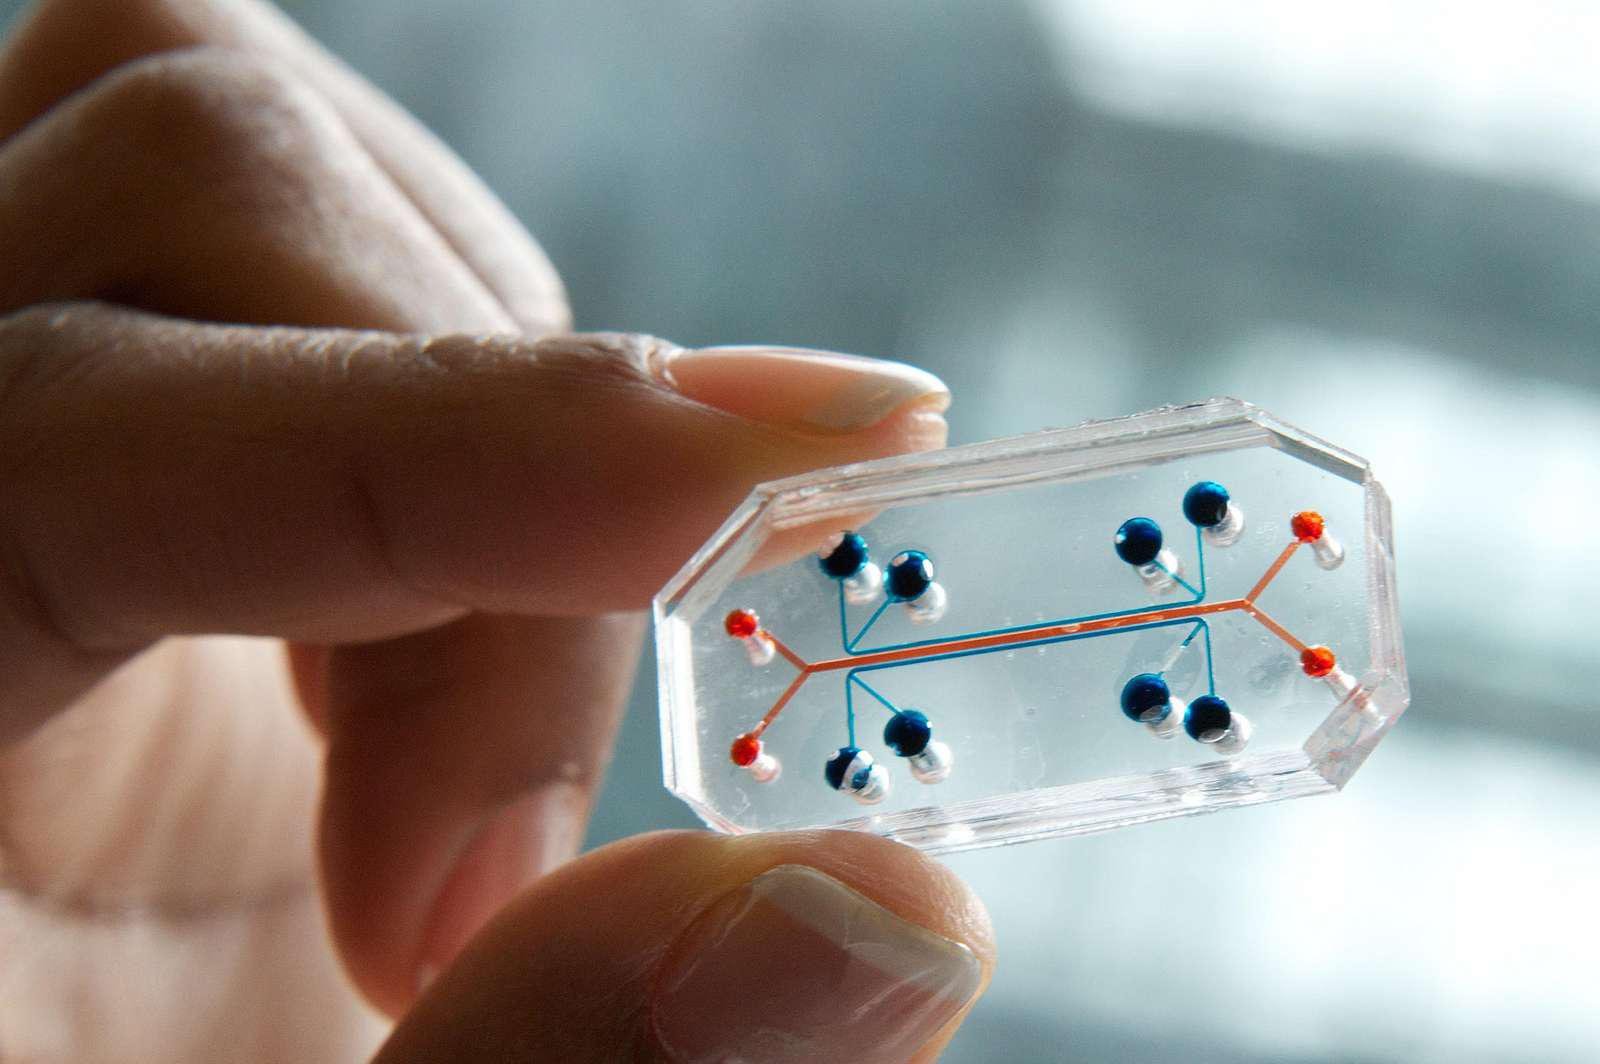 Esses chips especiais reproduzem órgãos humanos de forma 3D, e são boas aproximações para a realização de estudos e testes.